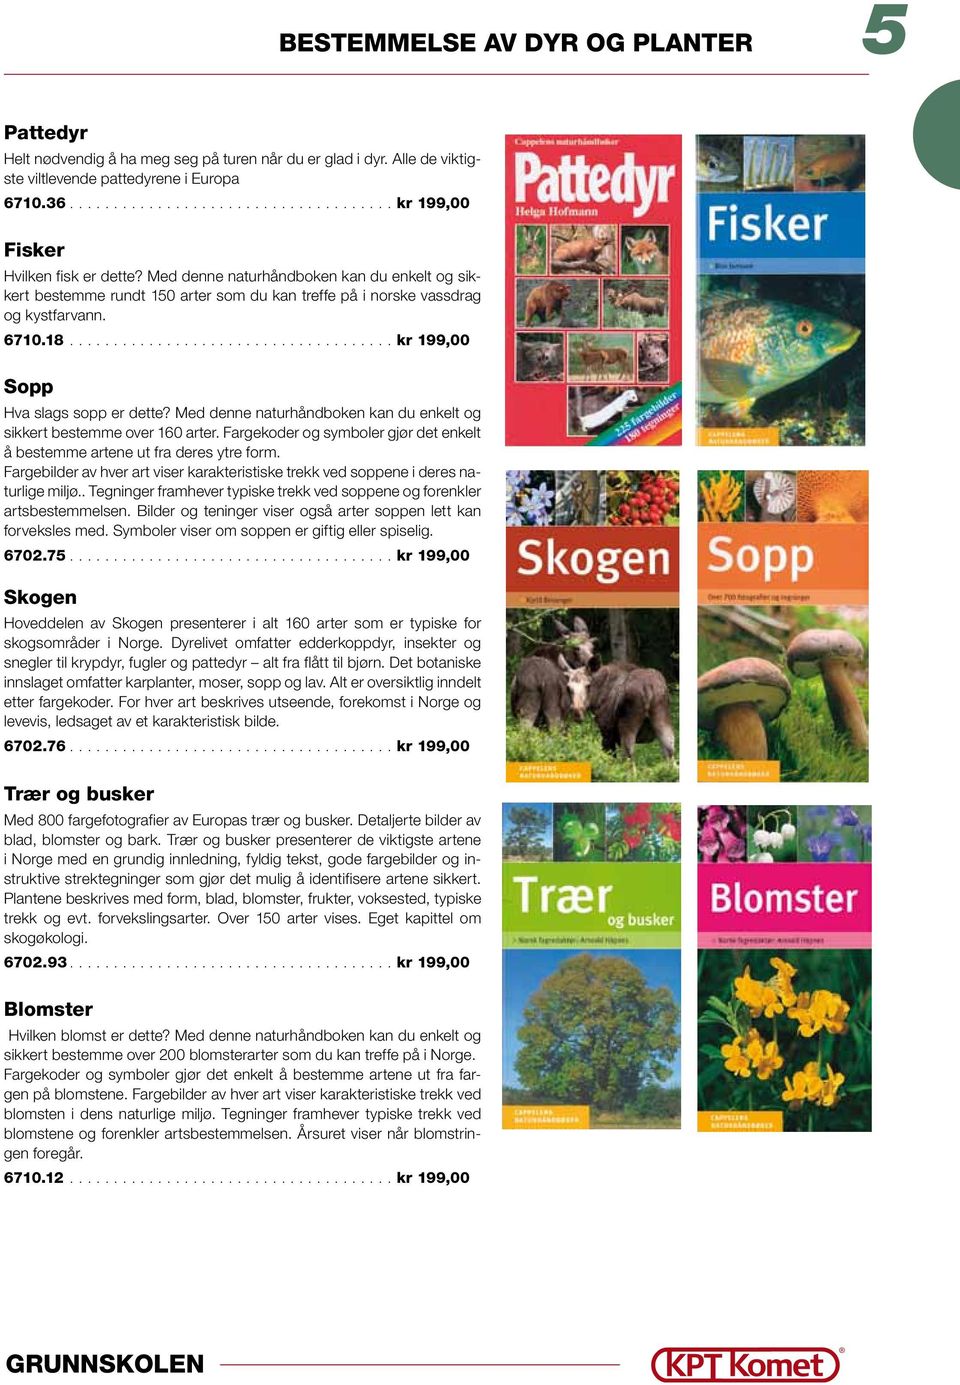 Med denne naturhåndboken kan du enkelt og sikkert bestemme over 160 arter. Fargekoder og symboler gjør det enkelt å bestemme artene ut fra deres ytre form.